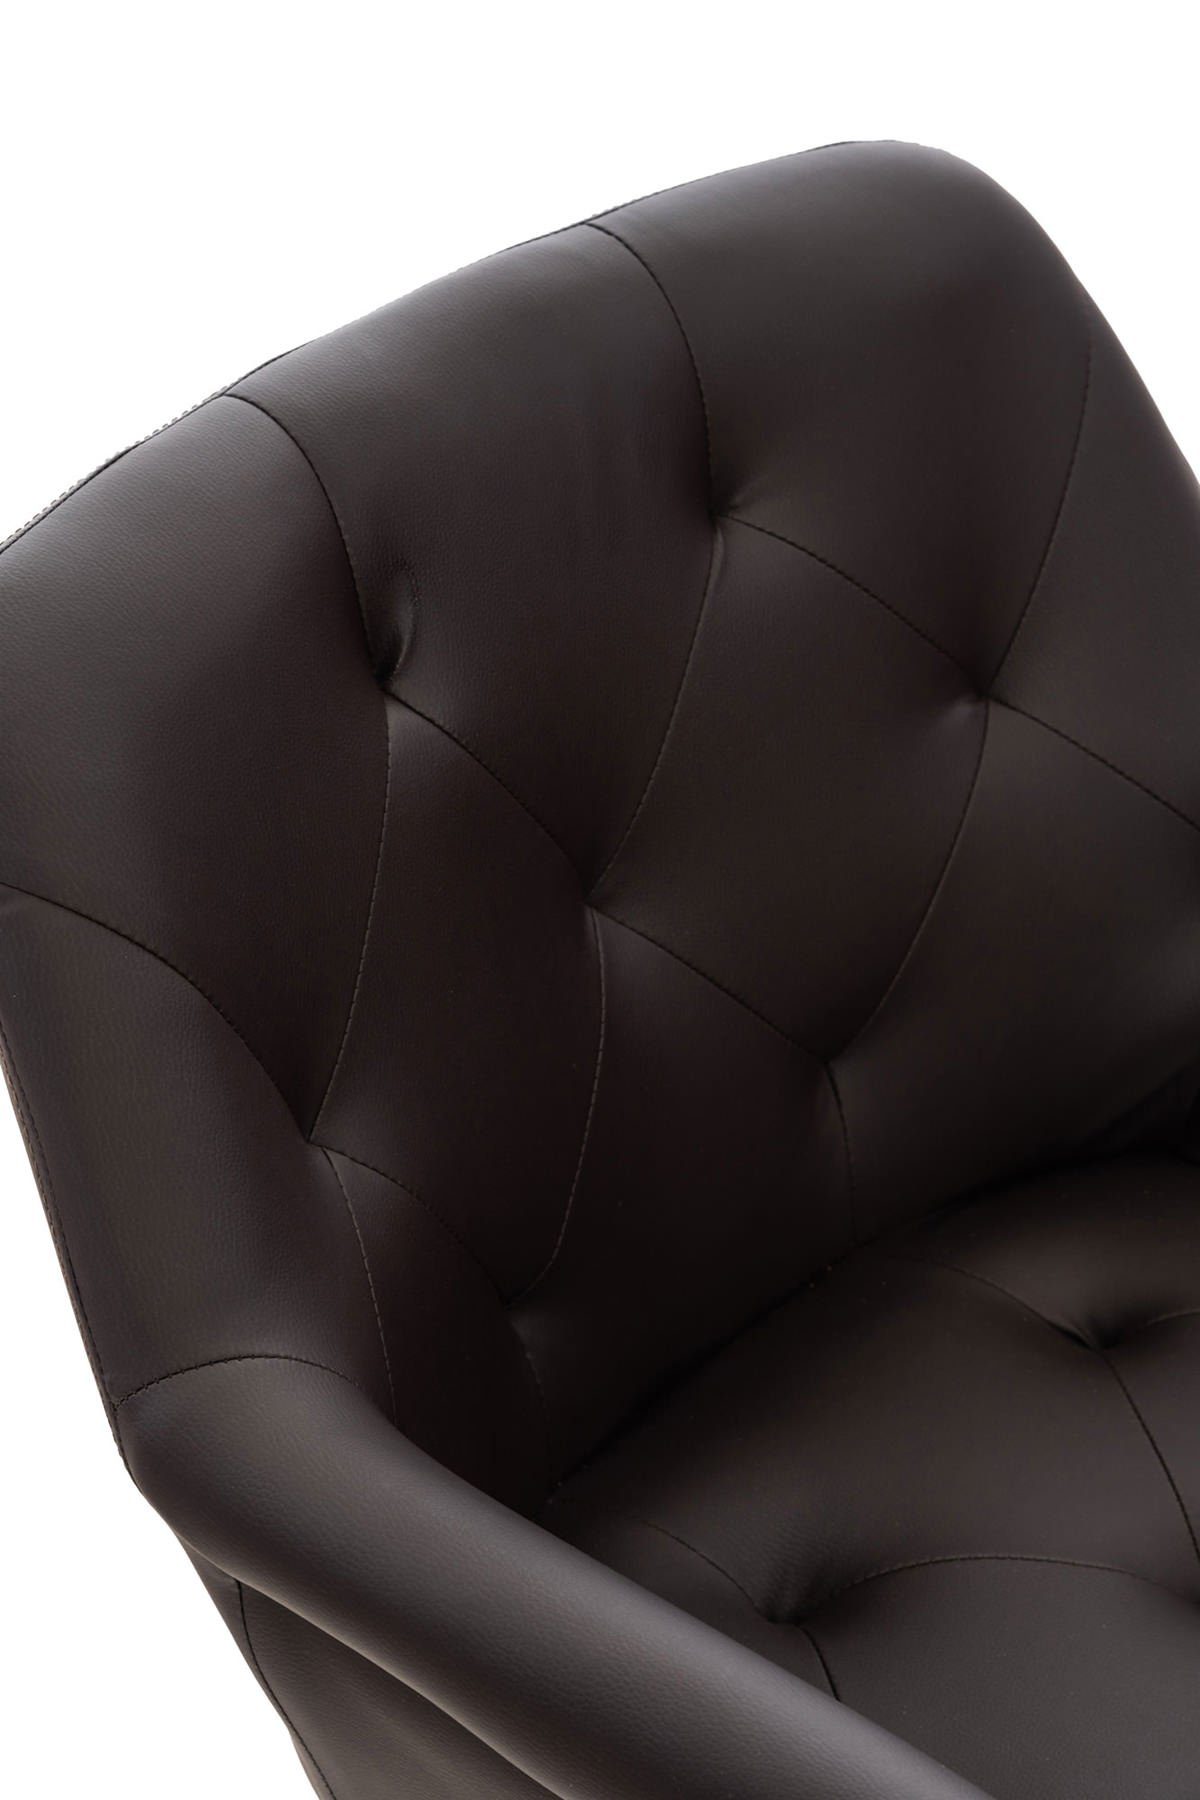 Gestell: Sitzfläche: hochwertig gepolsterter Sitzfläche Esstischstuhl Esszimmerstuhl schwarz TPFLiving Lamfol (Küchenstuhl Konferenzstuhl braun Metall mit Kunstleder - - Wohnzimmerstuhl), - -